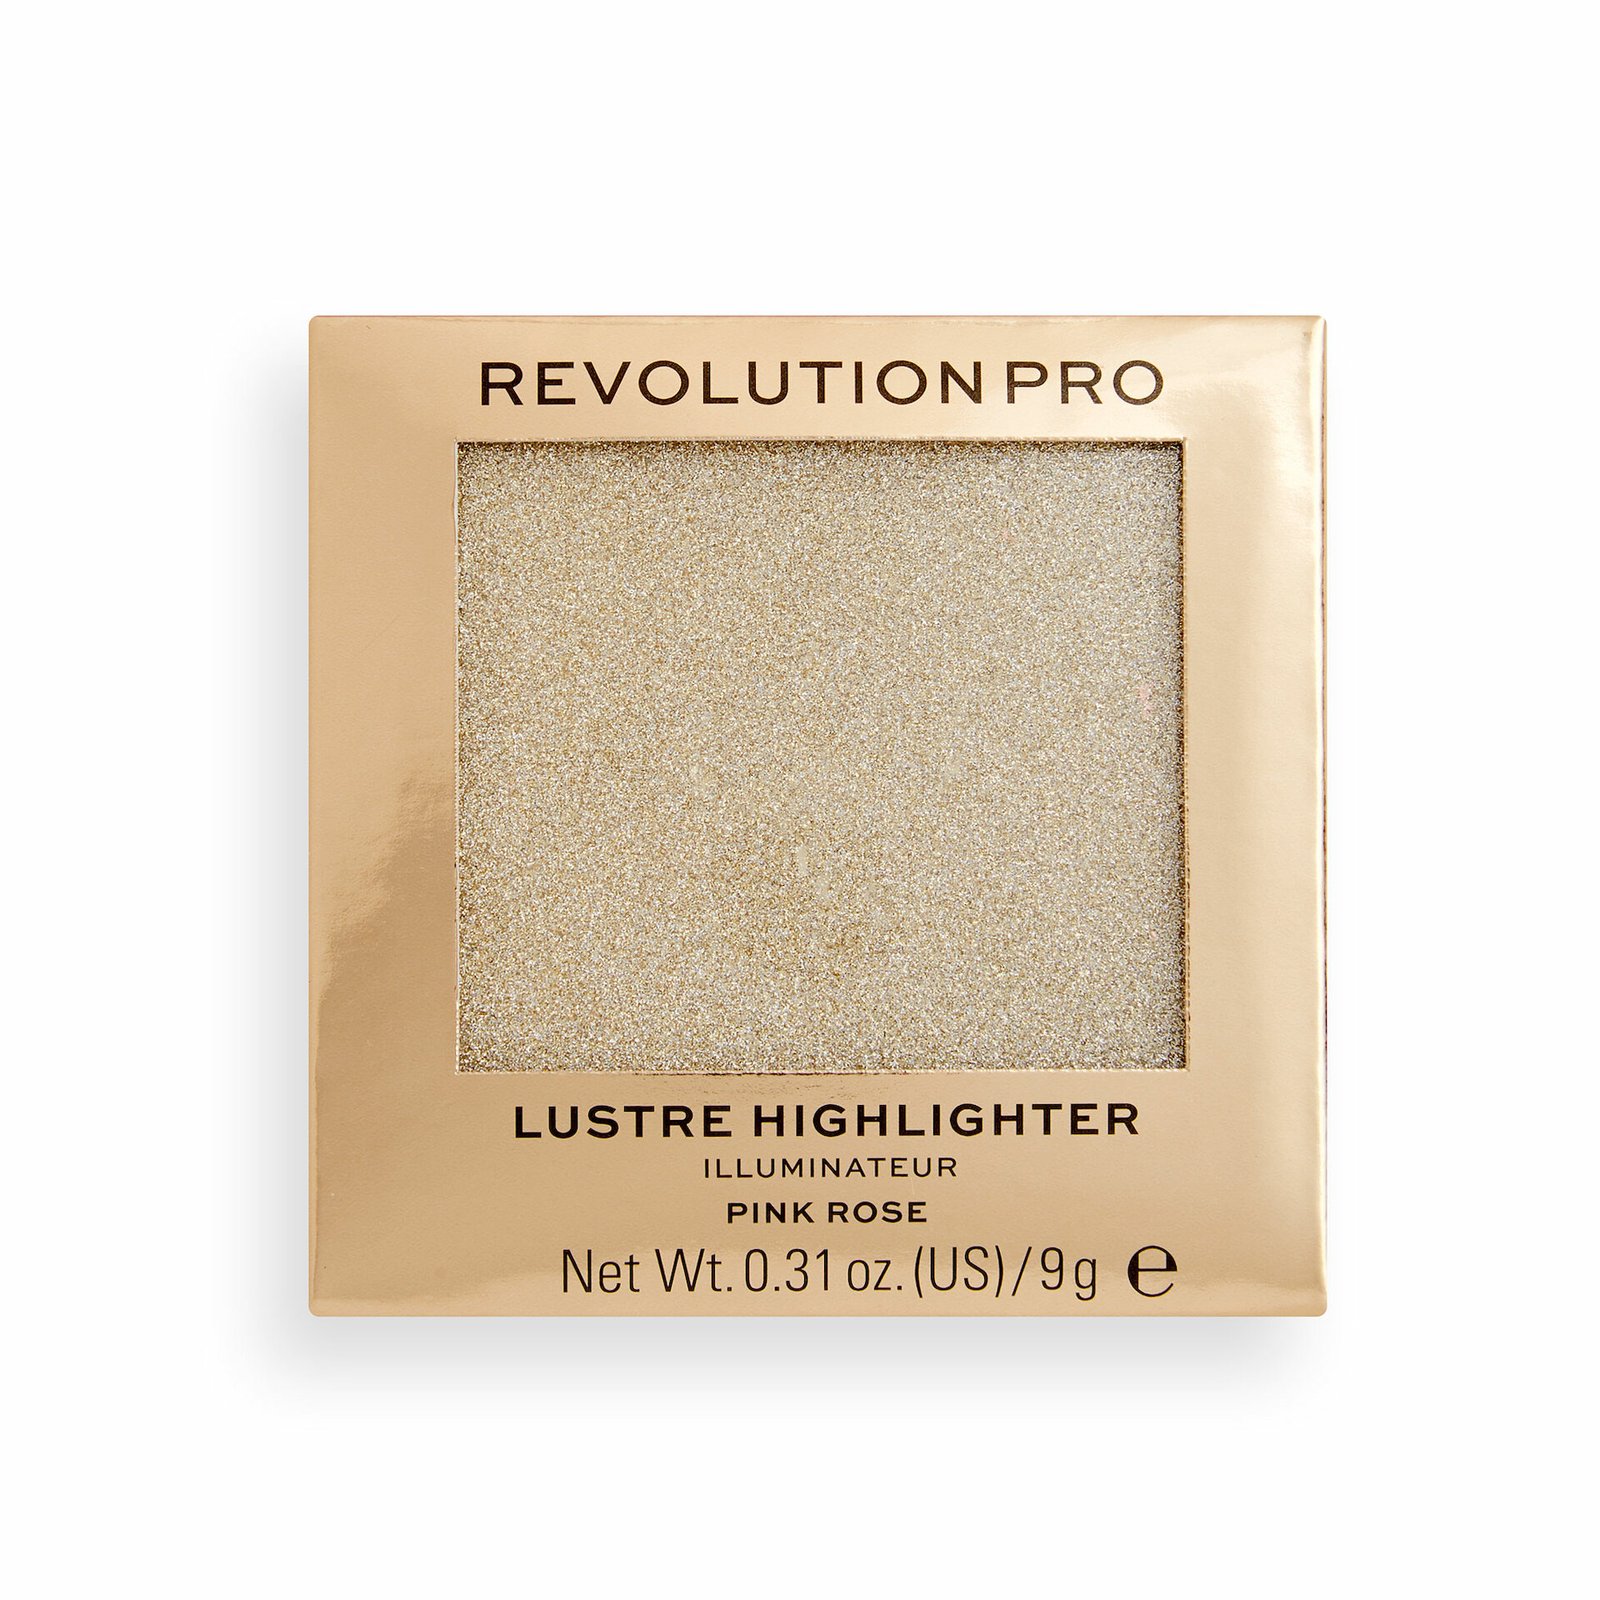 Makeup Revolution Pro Lustre Highlighter Pink Rose 9g